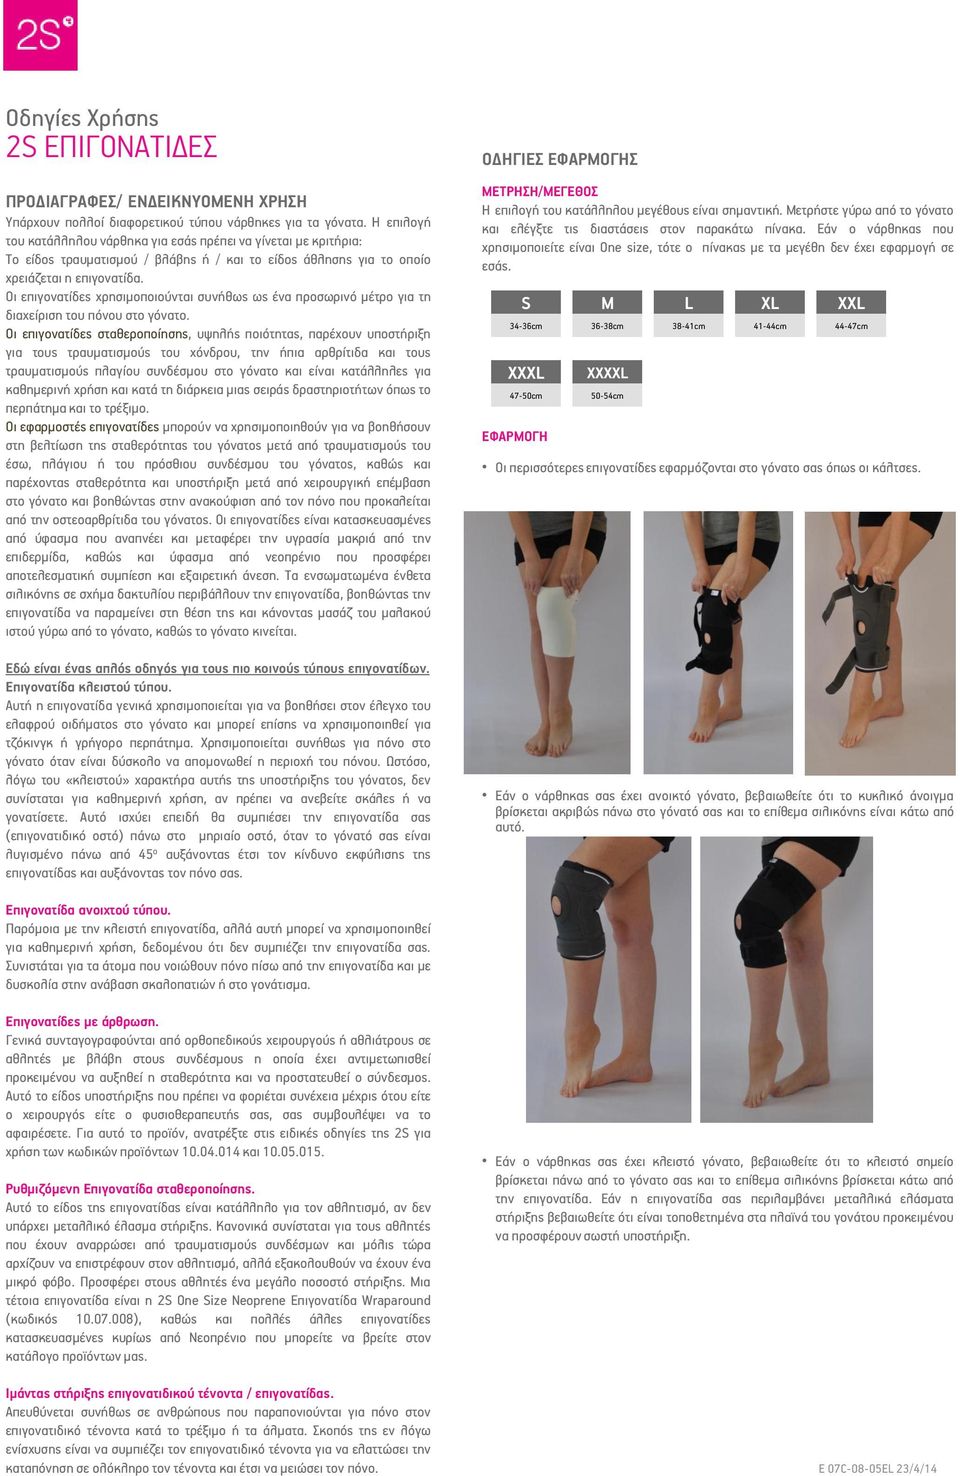 Οι επιγονατίδες χρησιμοποιούνται συνήθως ως ένα προσωρινό μέτρο για τη διαχείριση του πόνου στο γόνατο.